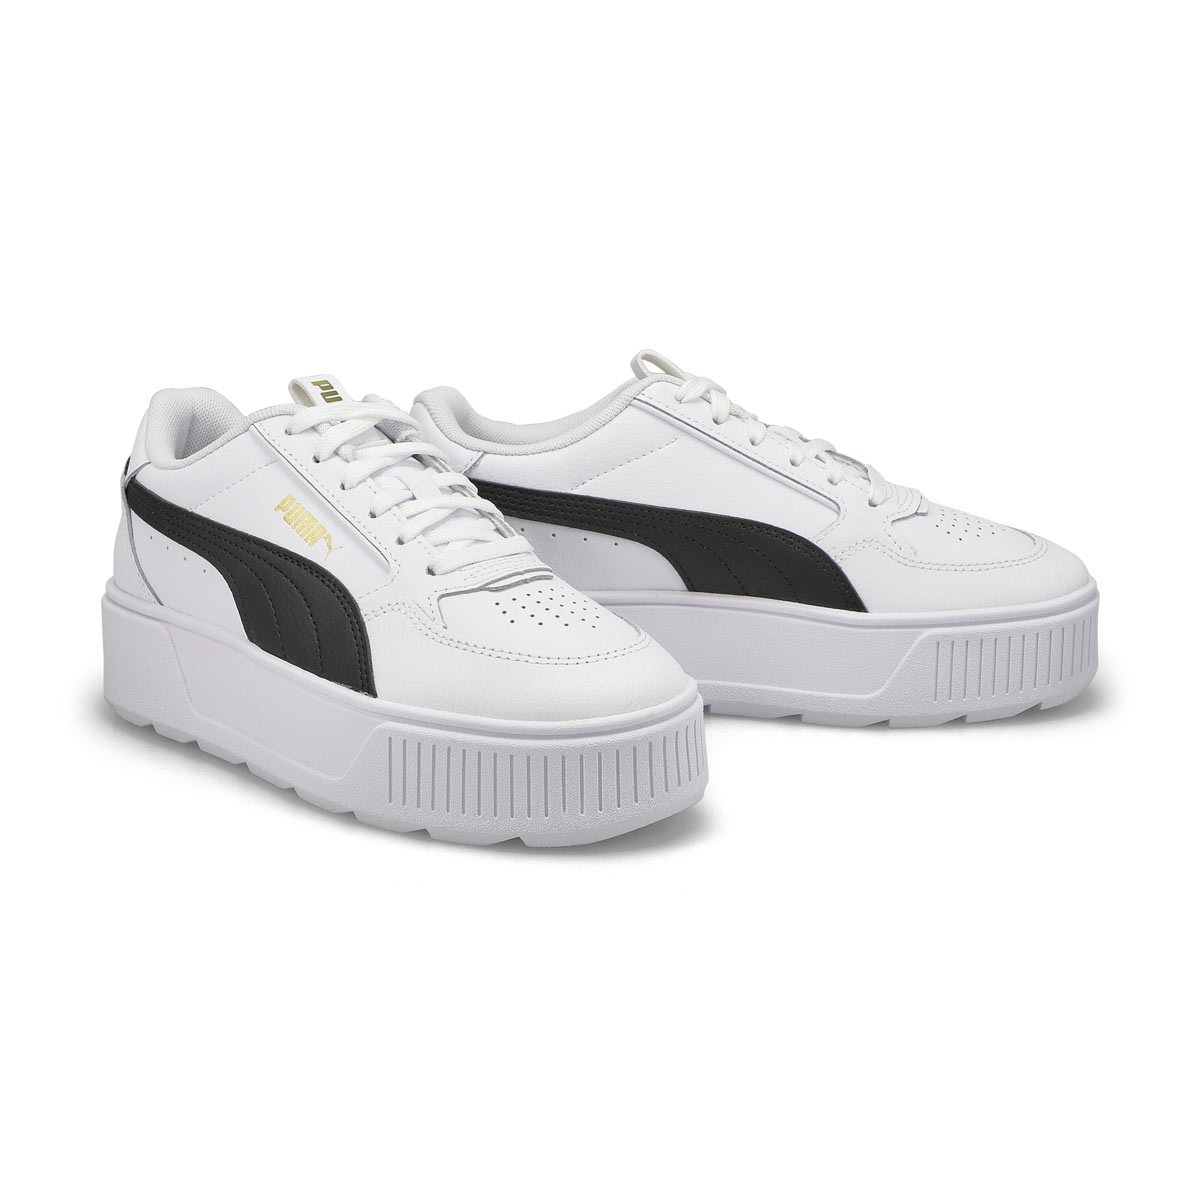 Girls' Karmen Rebelle Jr Sneaker - White/Black